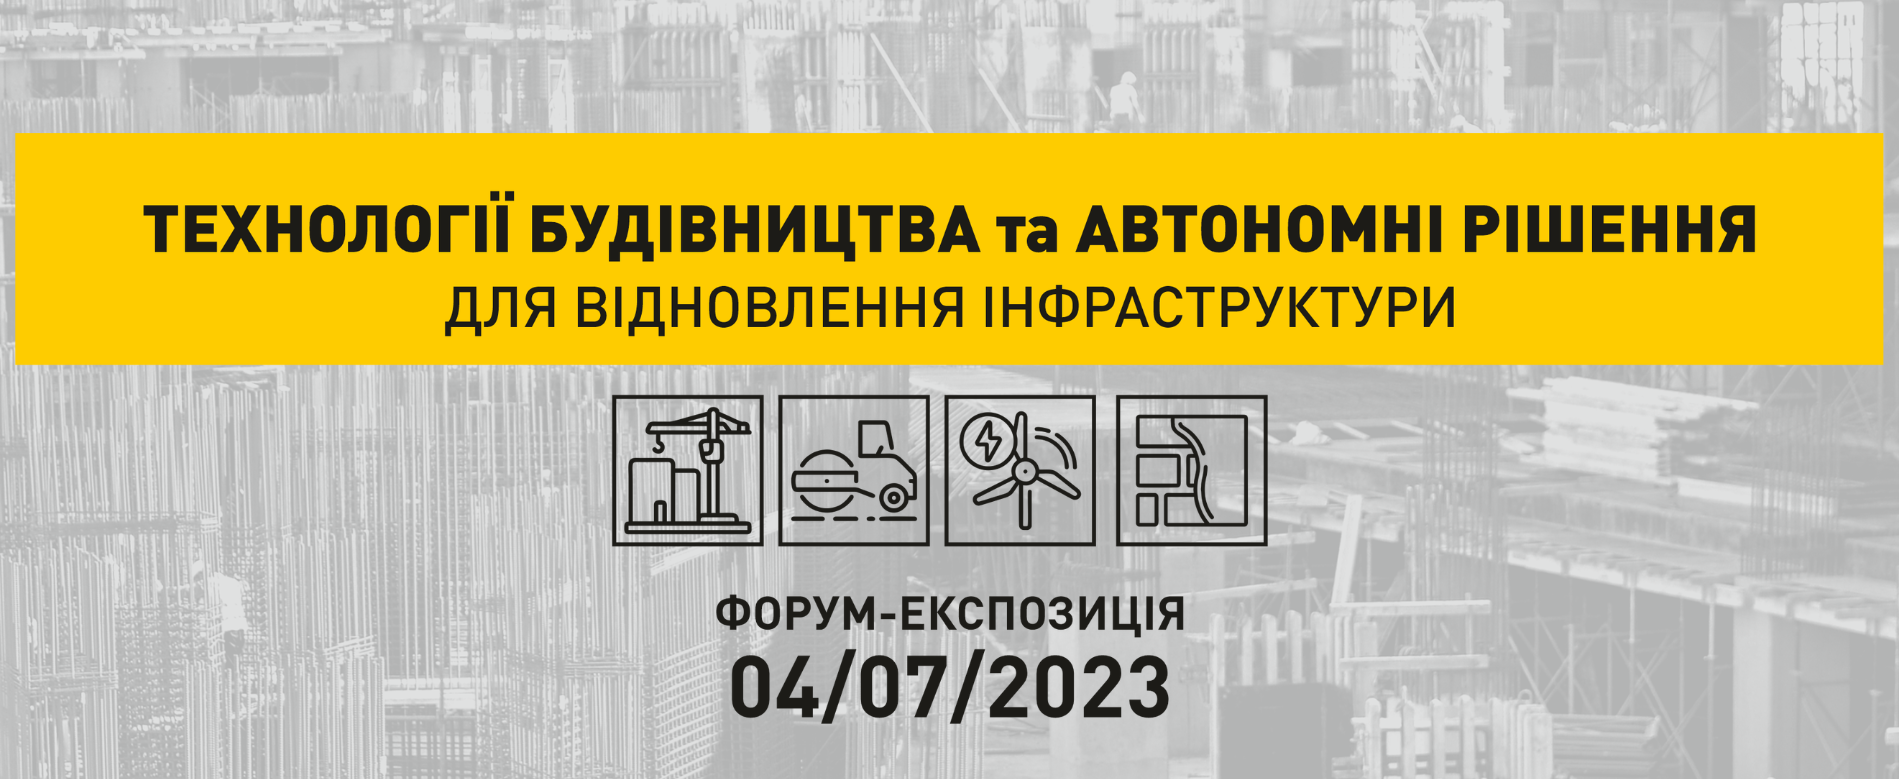 У Києві відбудеться форум-експозиція інноваційних розробок у сфері технологій будівництва